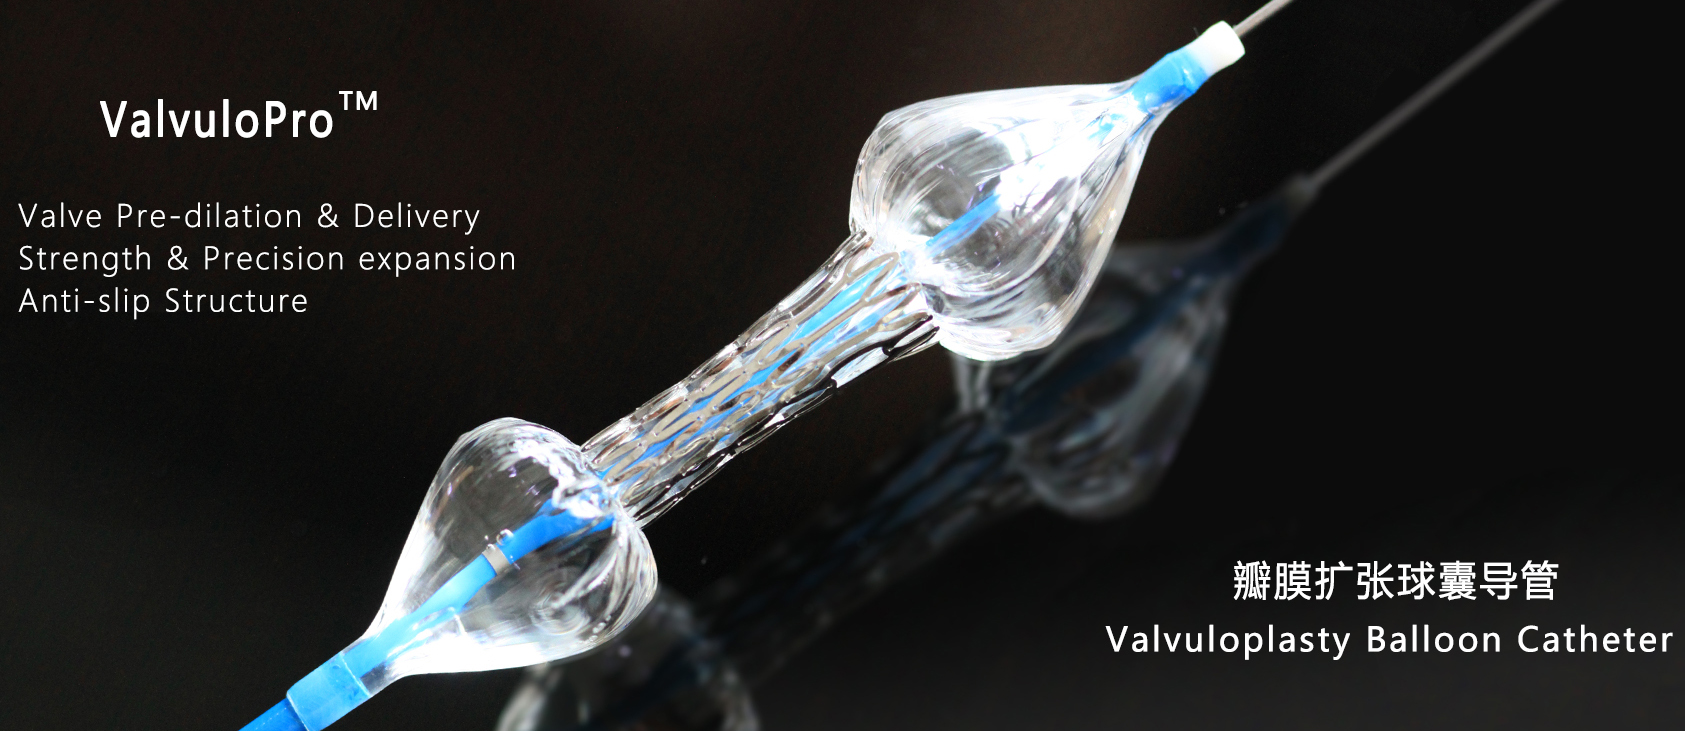 Valvuloplasty Balloon Catheter